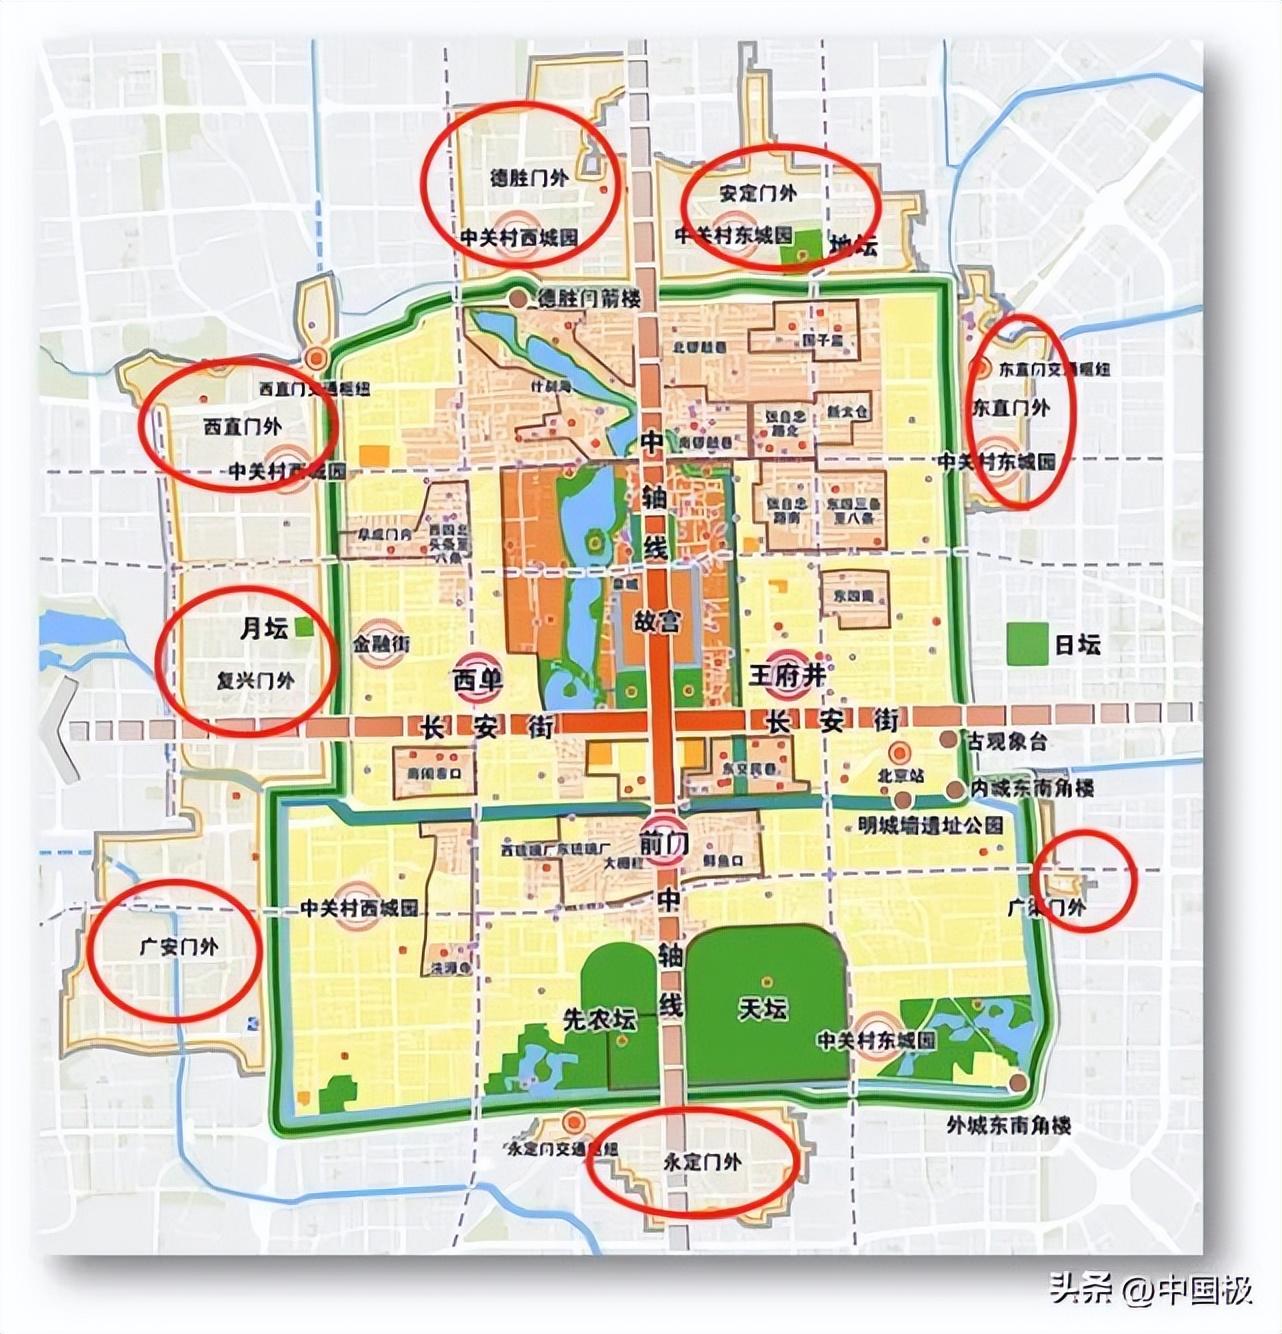 北京7环路全长多少公里,北京道路建设规划图